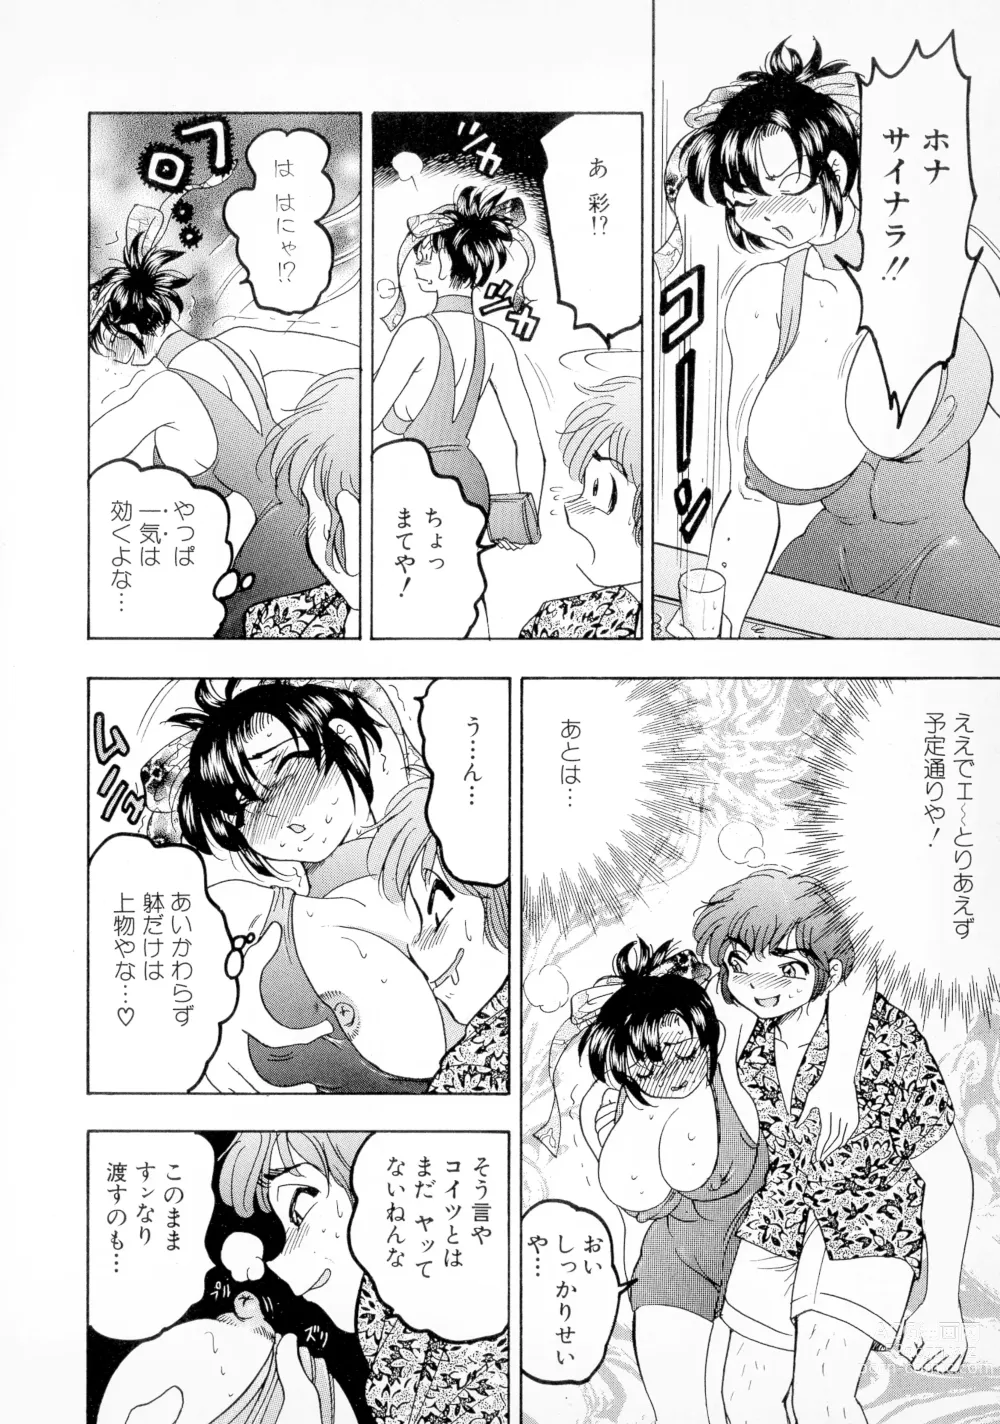 Page 146 of manga Banana Kajuu